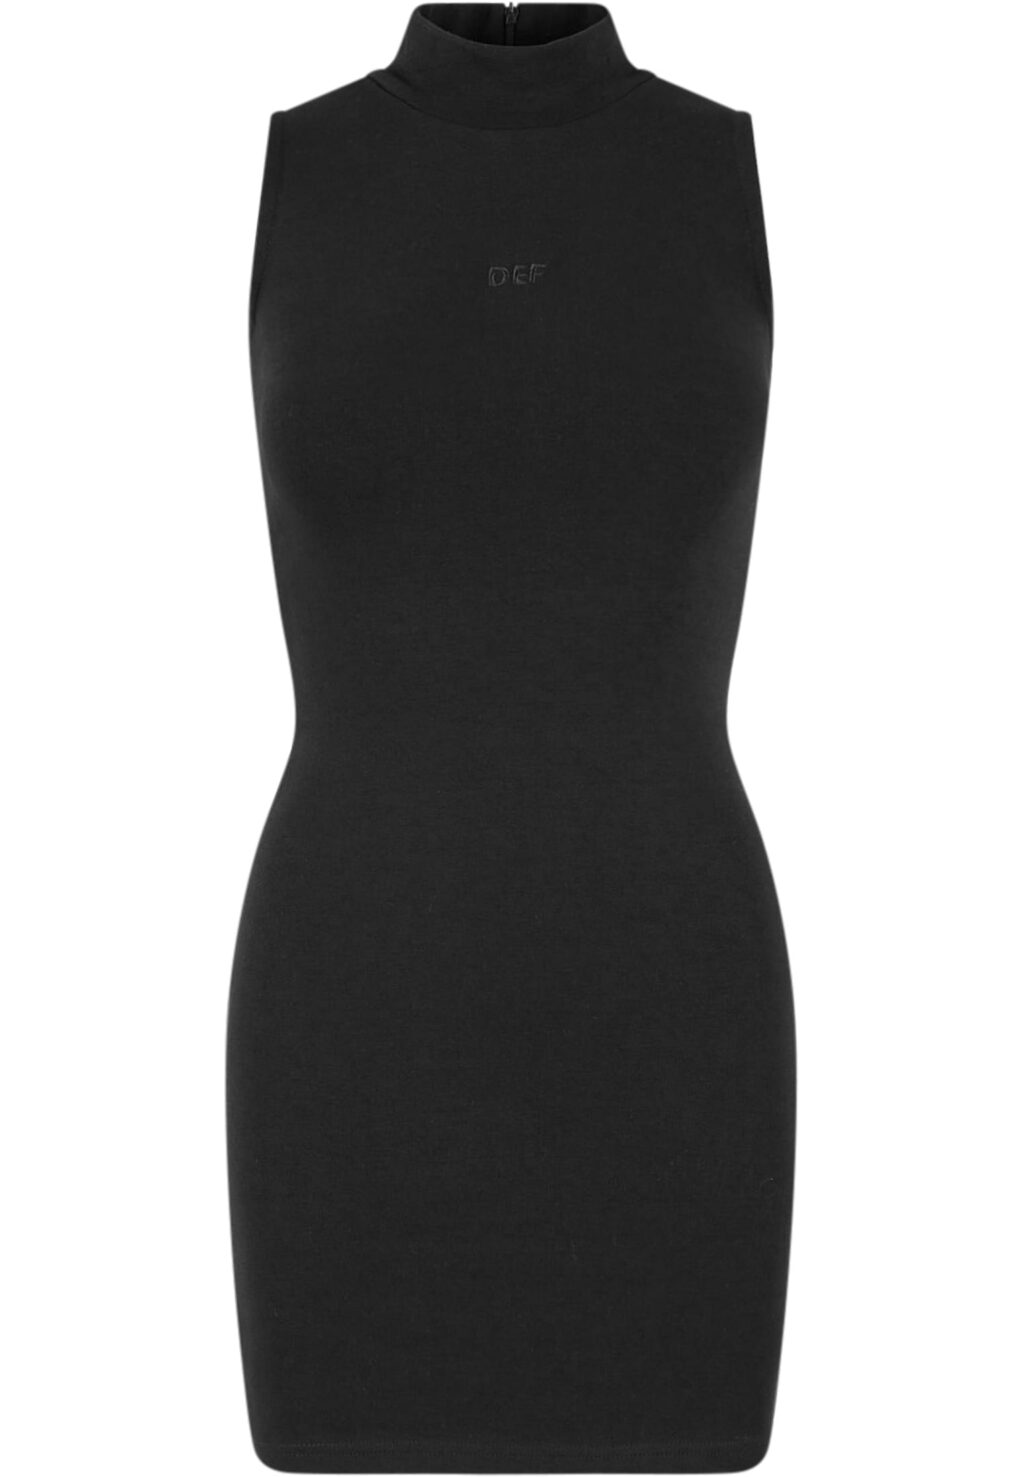 Fitted Sleeveless Dress black DFLDR070